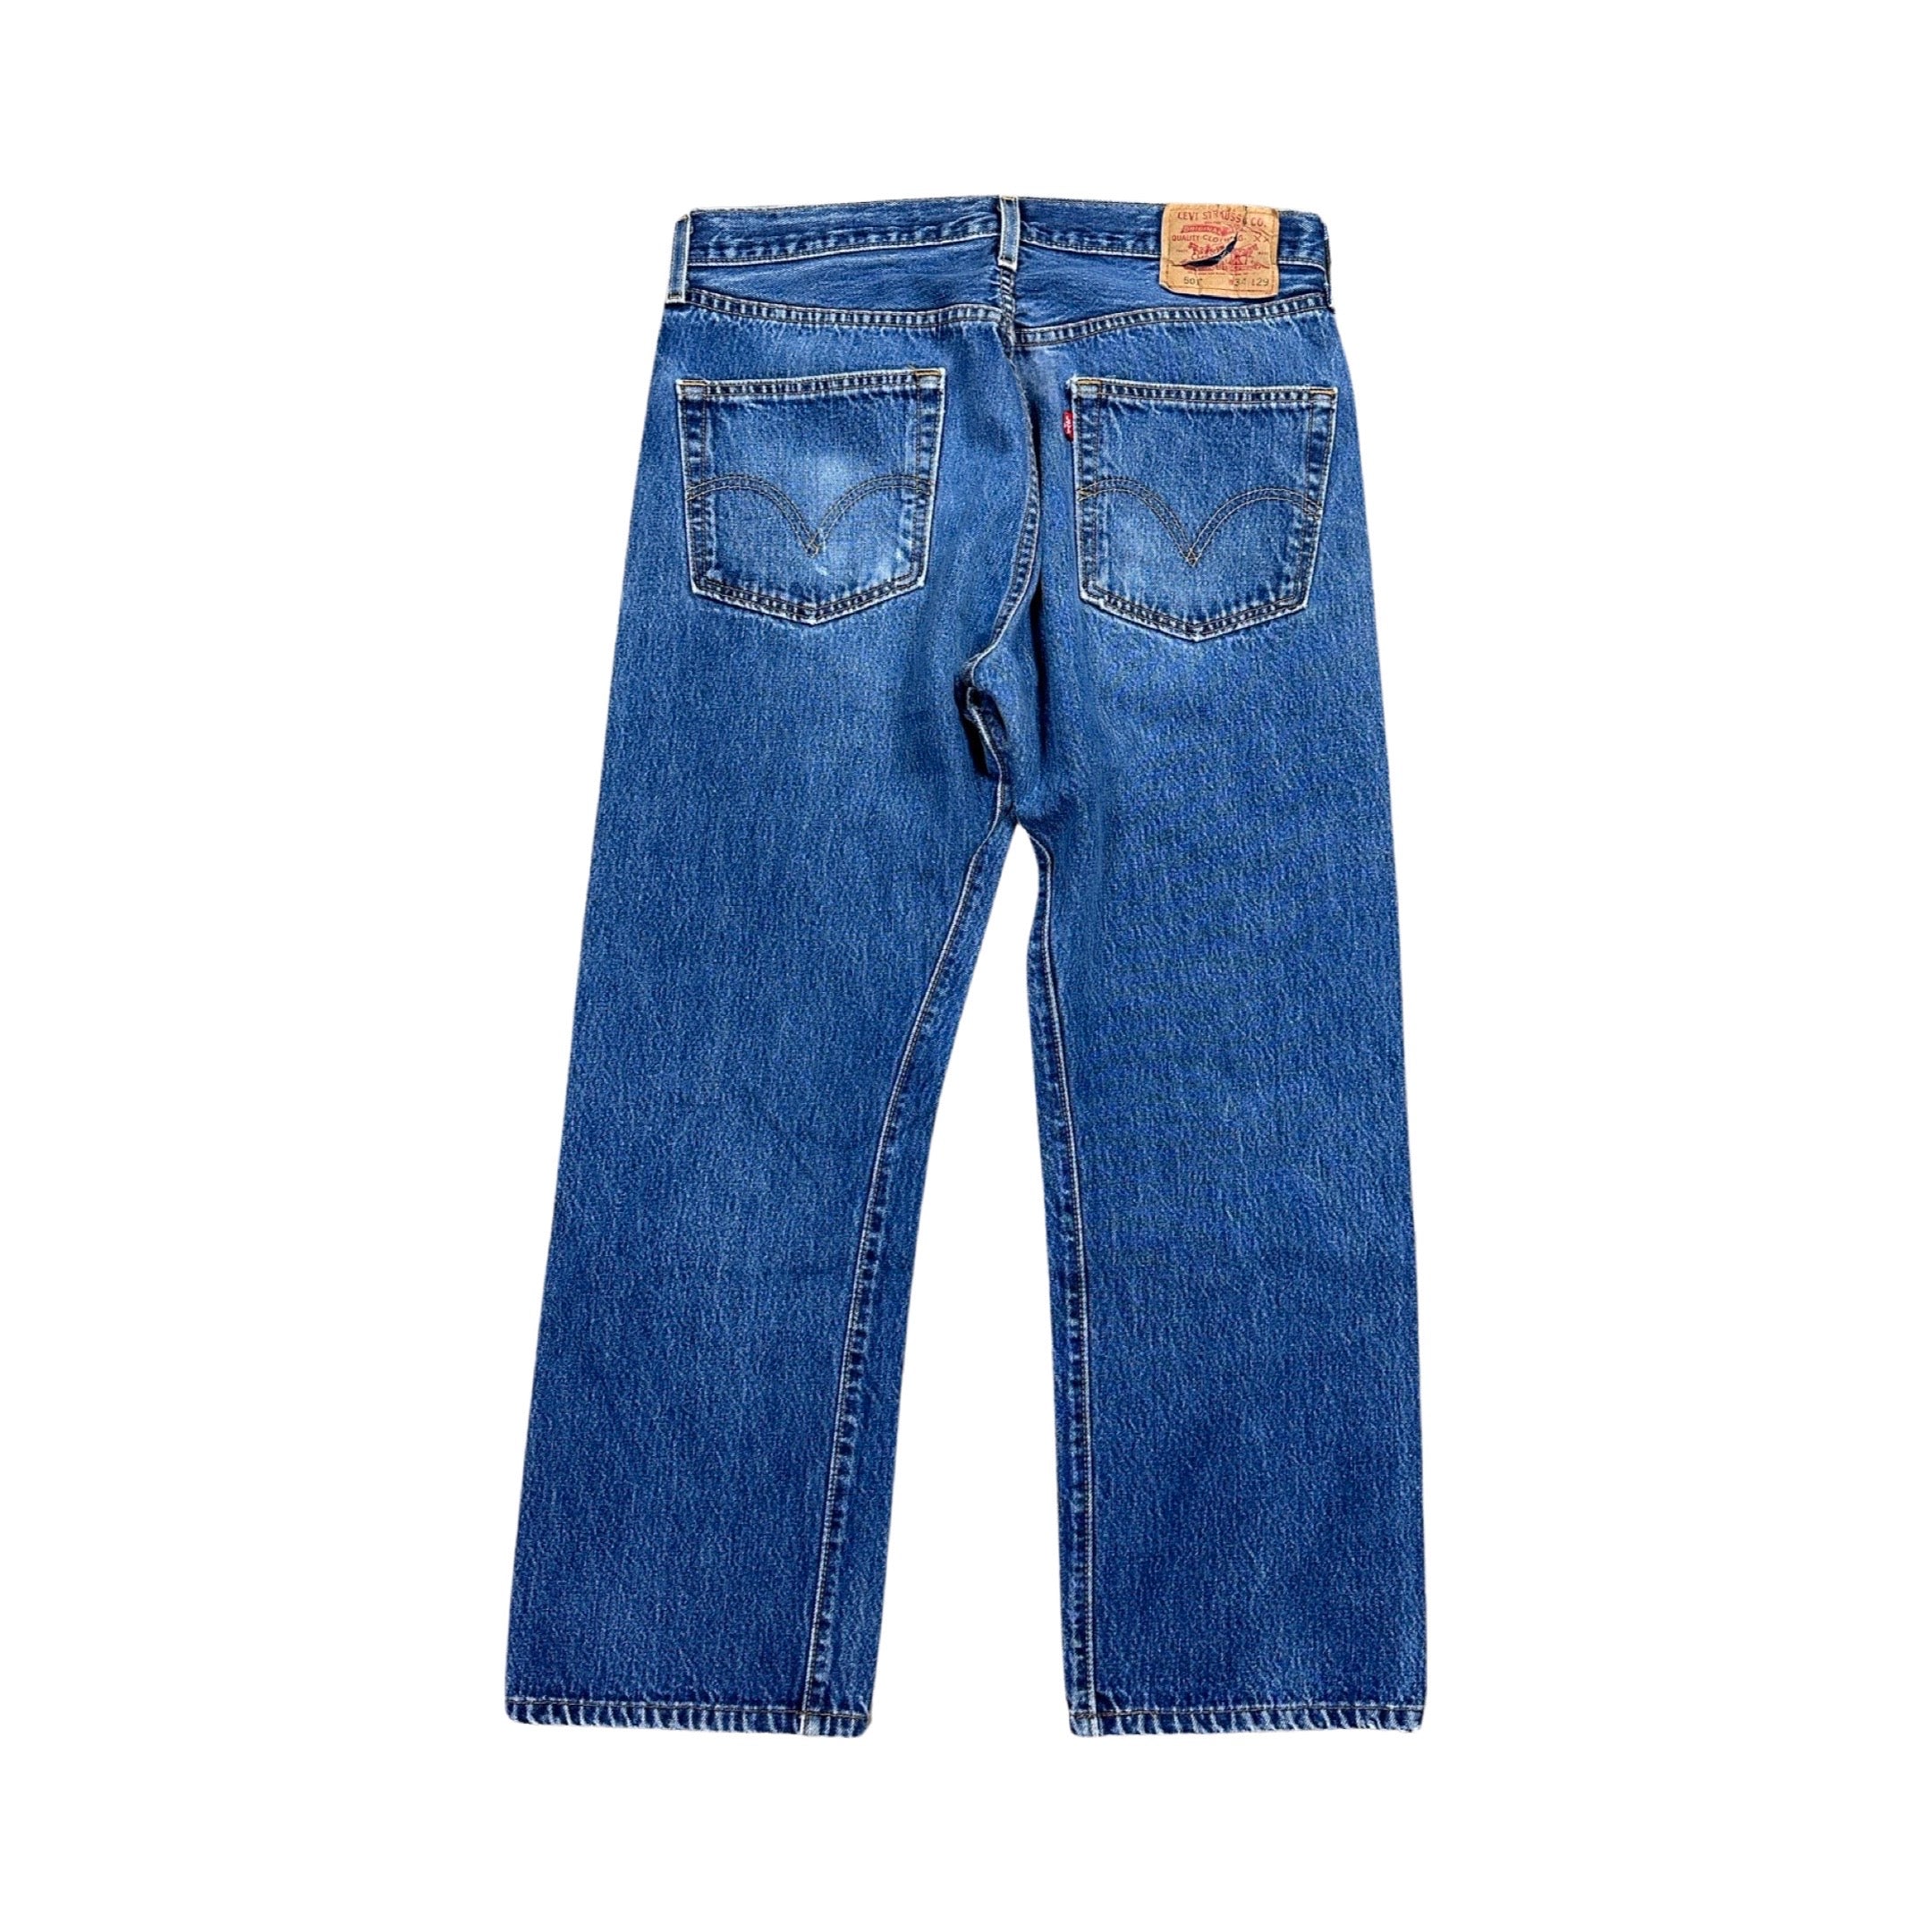 Levi’s 501 Jeans 2003 (34”)